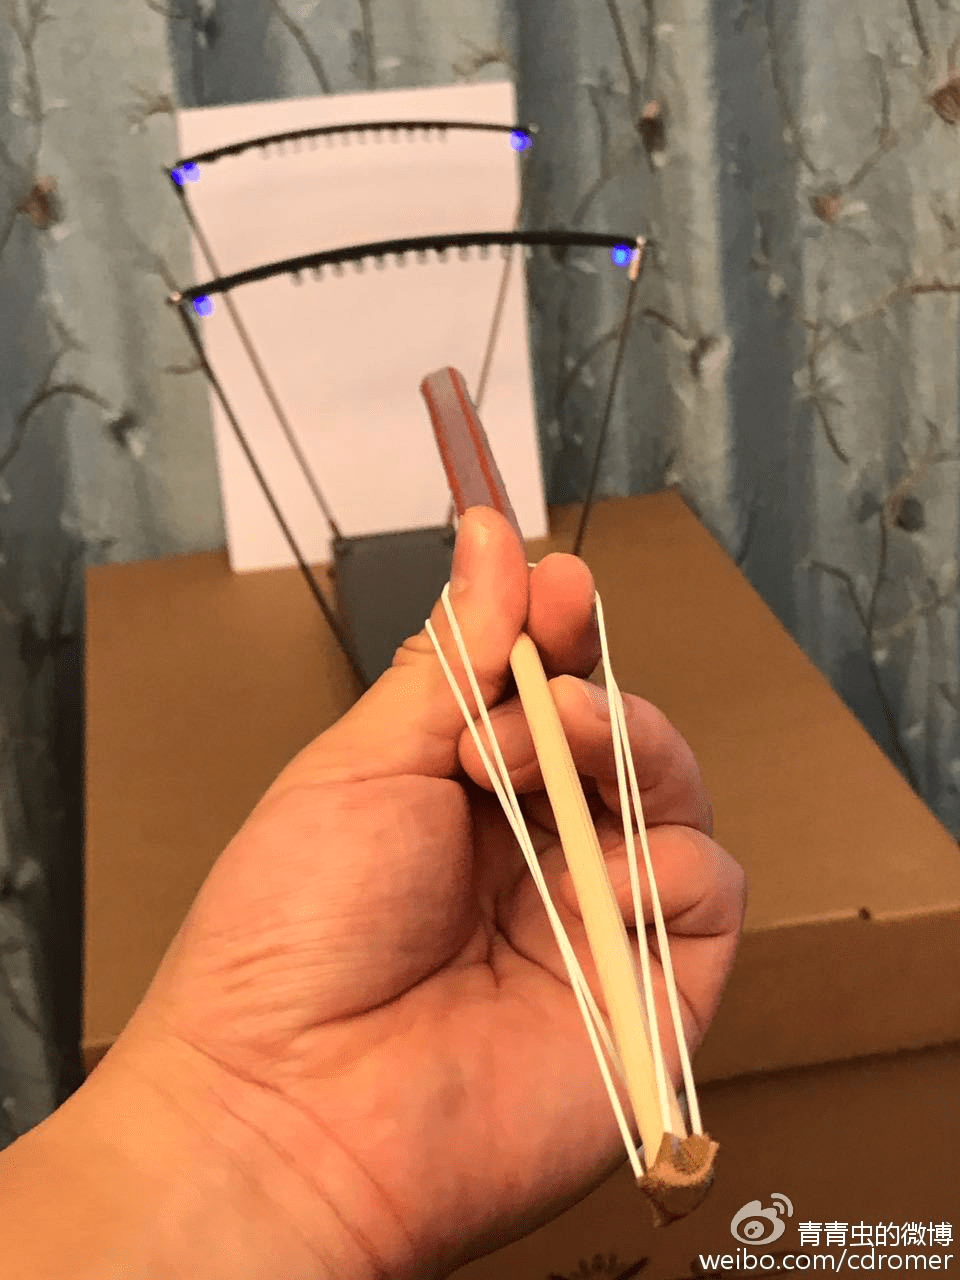 用了两根橡皮筋,一根一次性筷子和一根可乐吸管组成了一个简易发射器